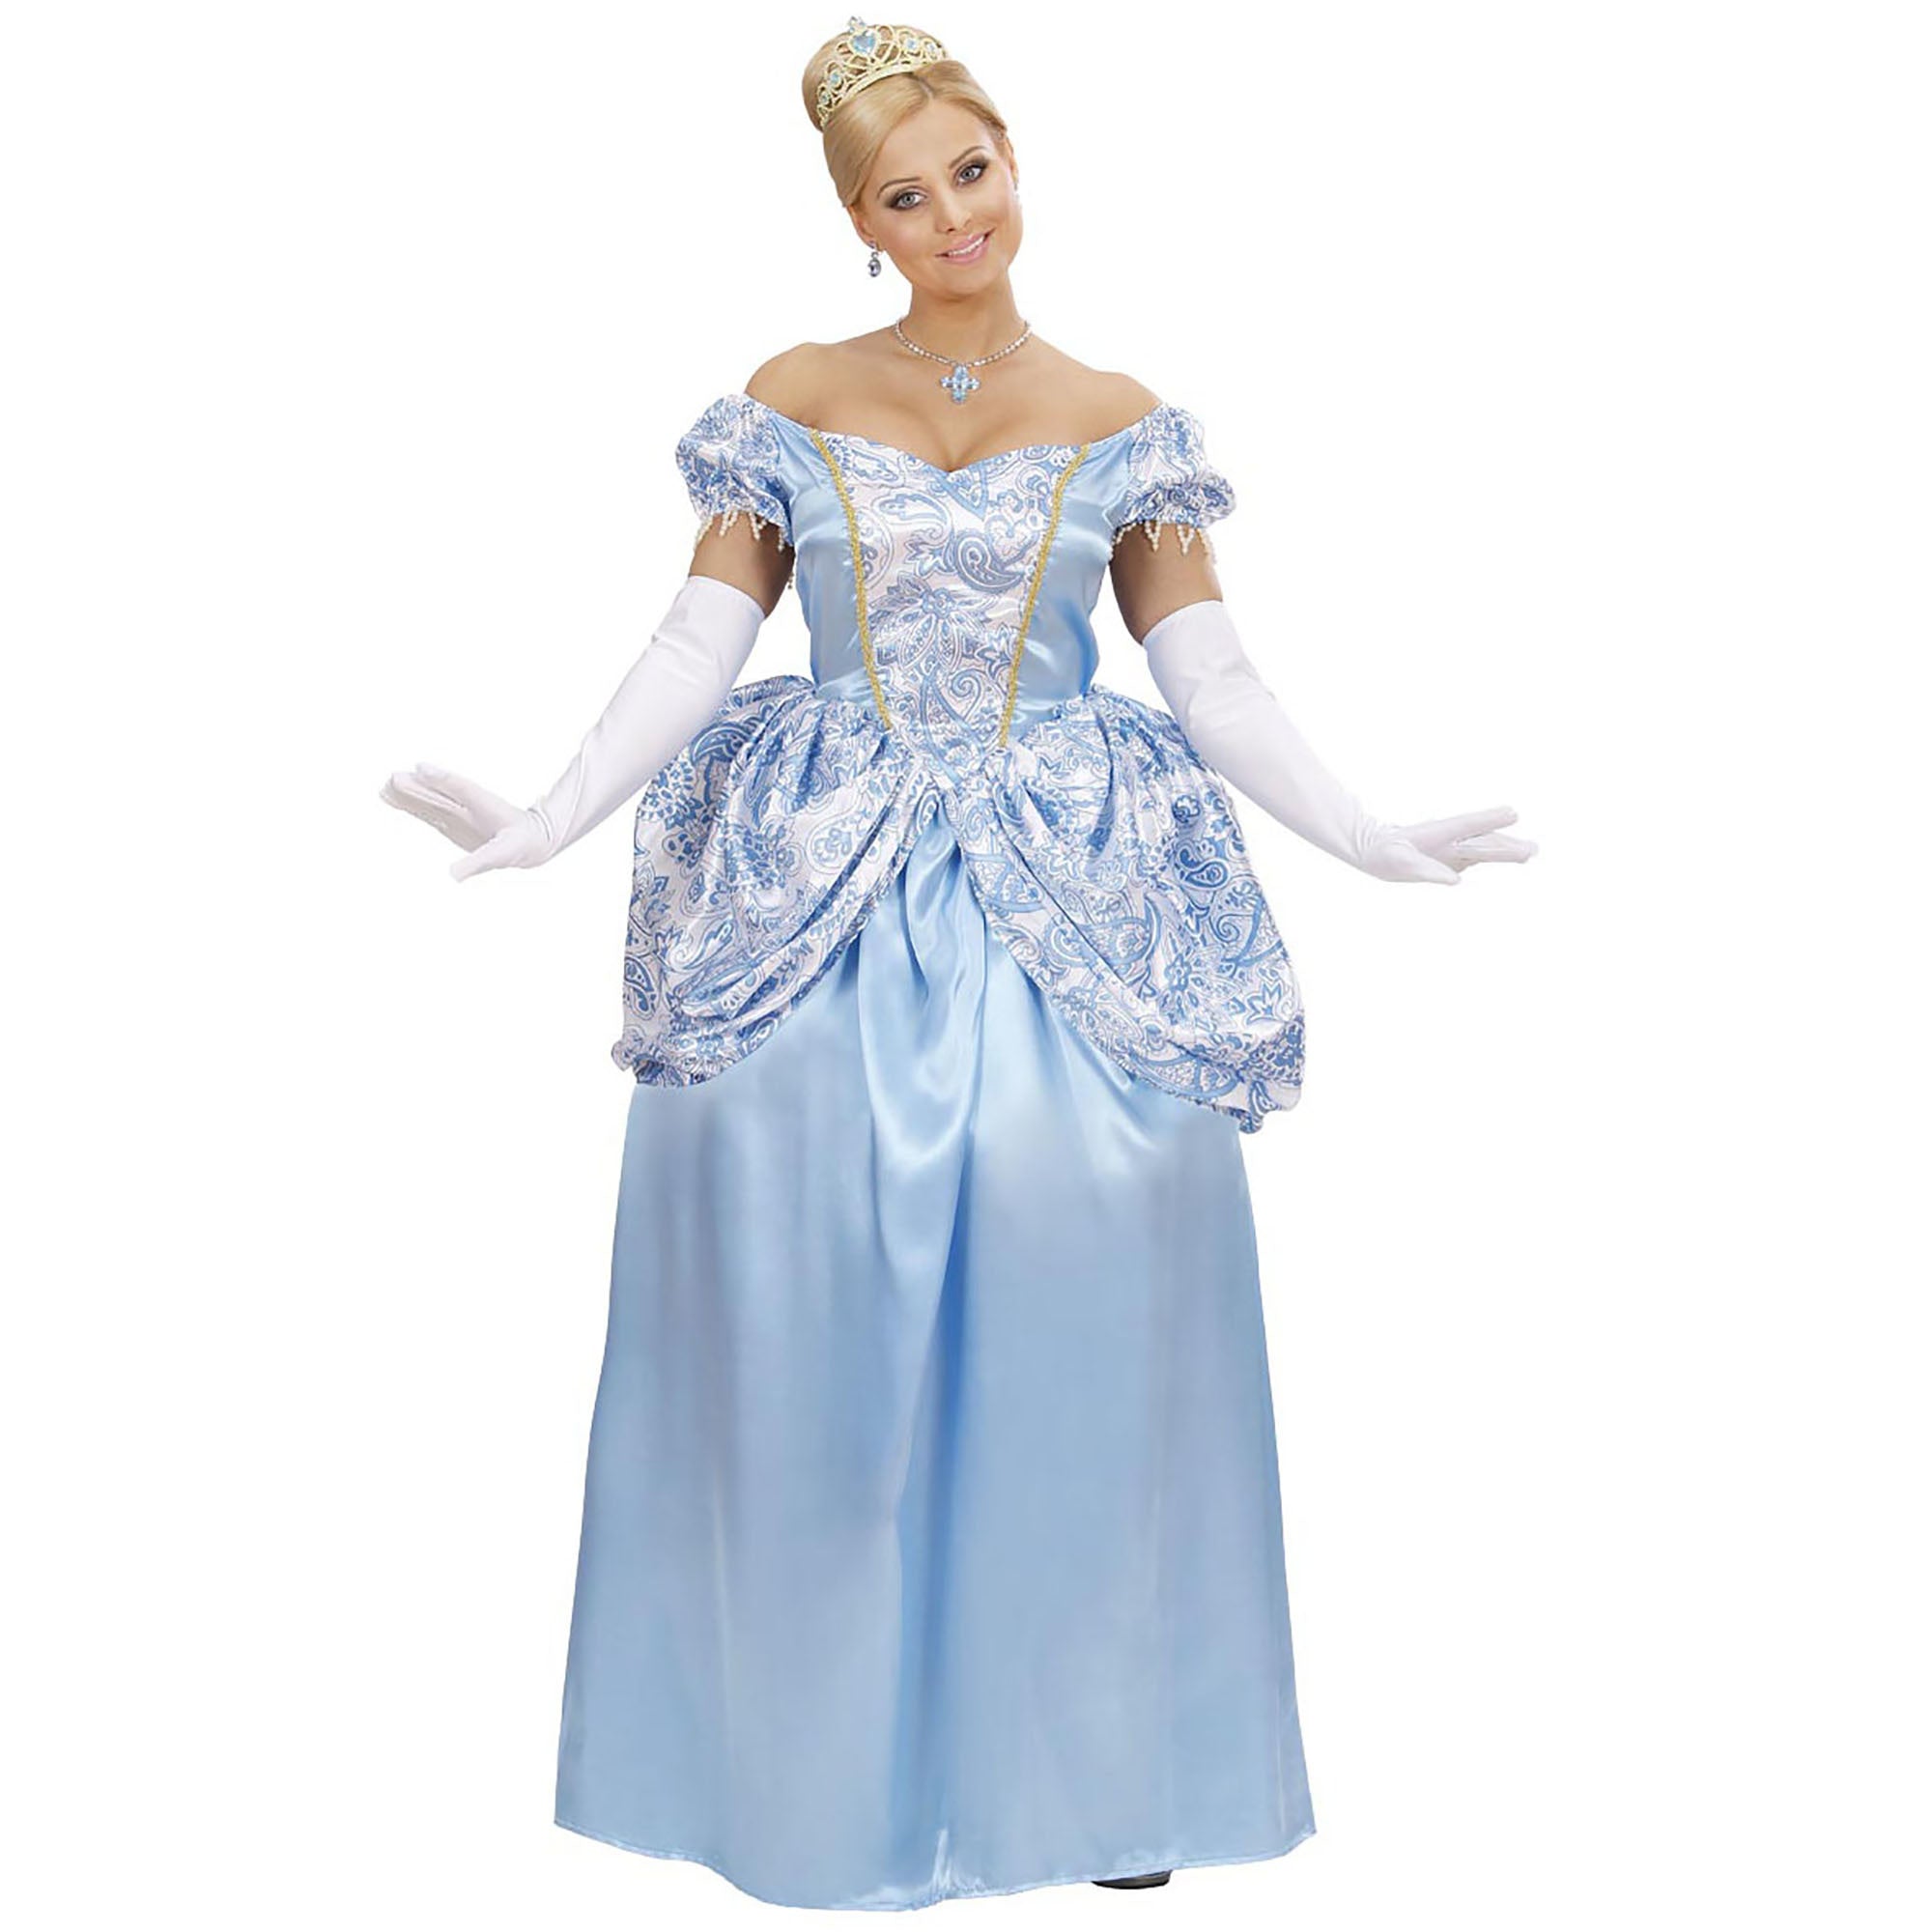 "Blauwe prinsessen outfit voor vrouwen  - Verkleedkleding - Small"